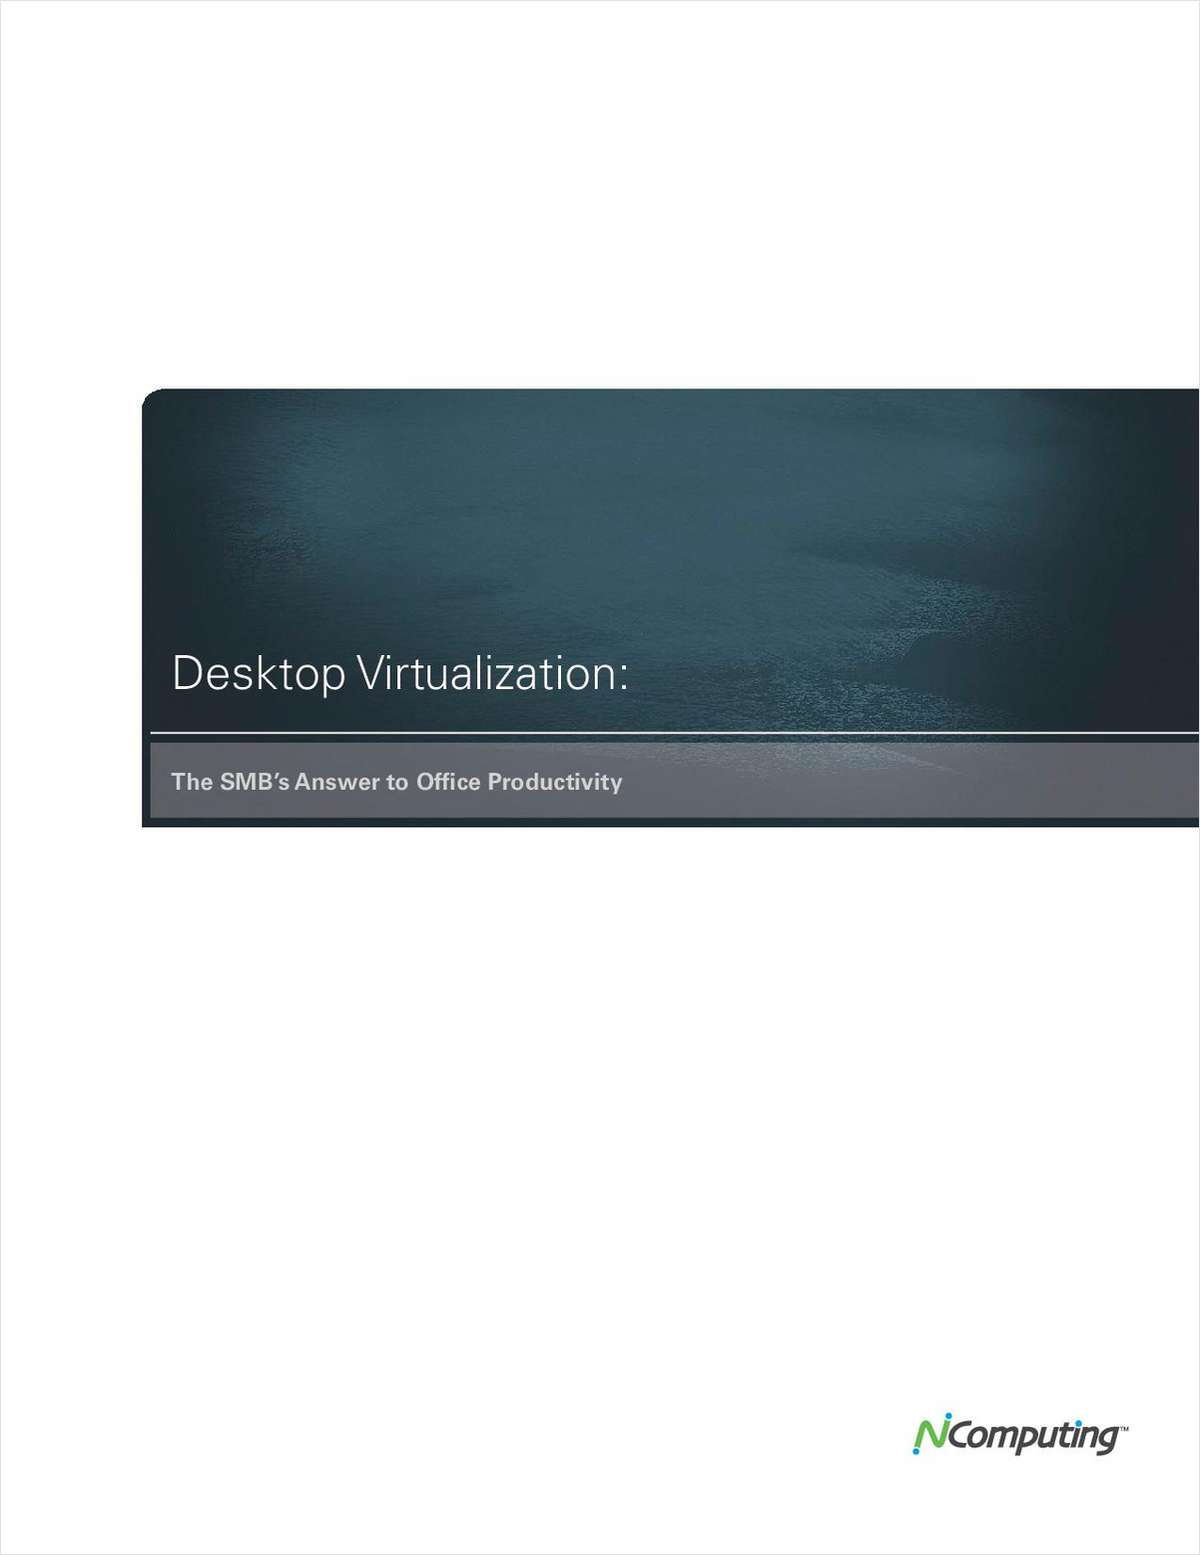 Desktop Virtualization: The SMB's Answer to Office Productivity